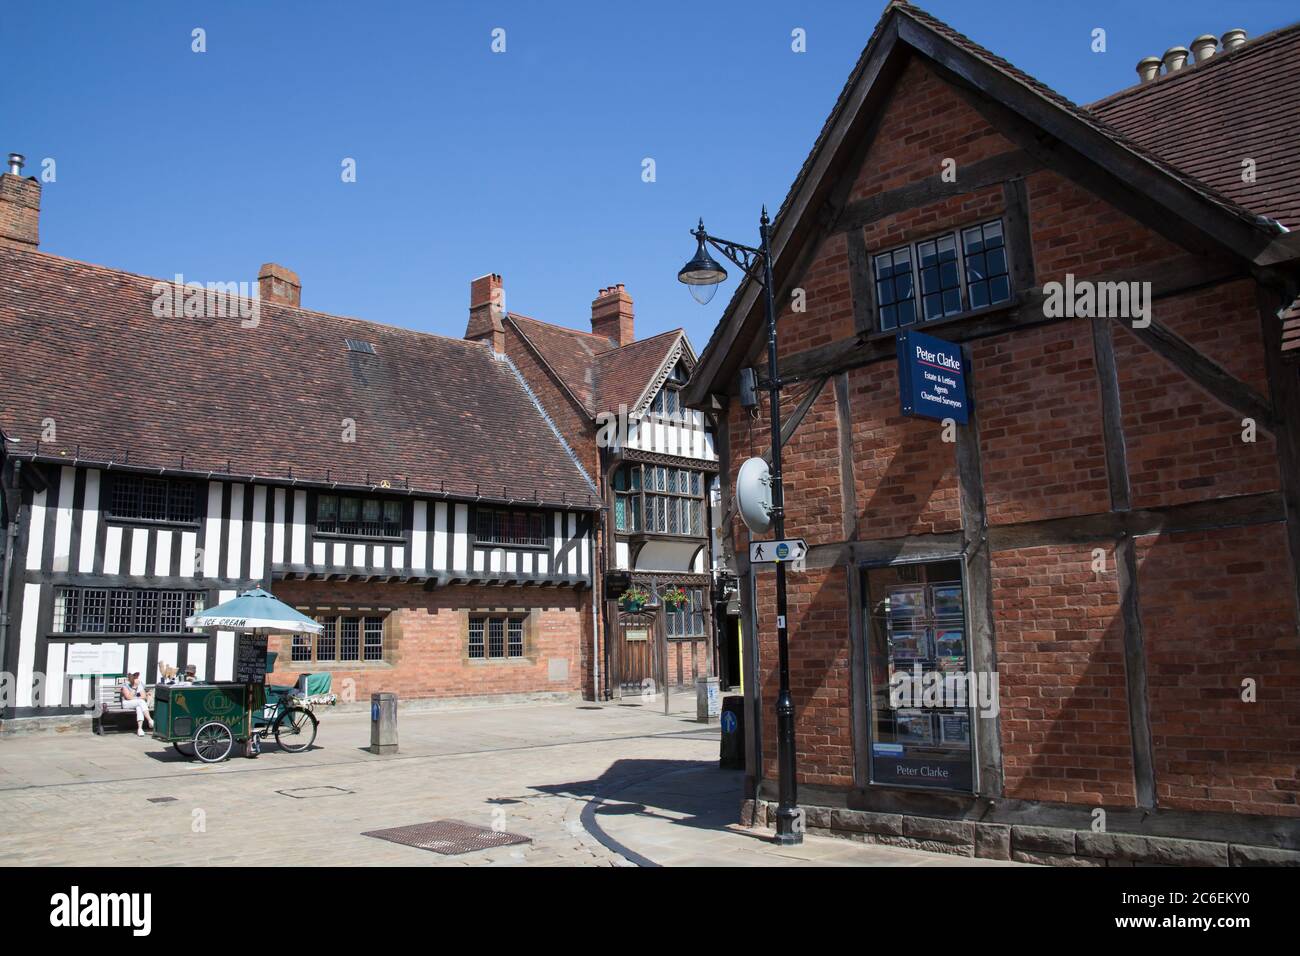 Vues de la rue Henley, y compris la bibliothèque de Stratford-upon-Avon dans le Warwickshire au Royaume-Uni, prises le 22 juin 2020 Banque D'Images